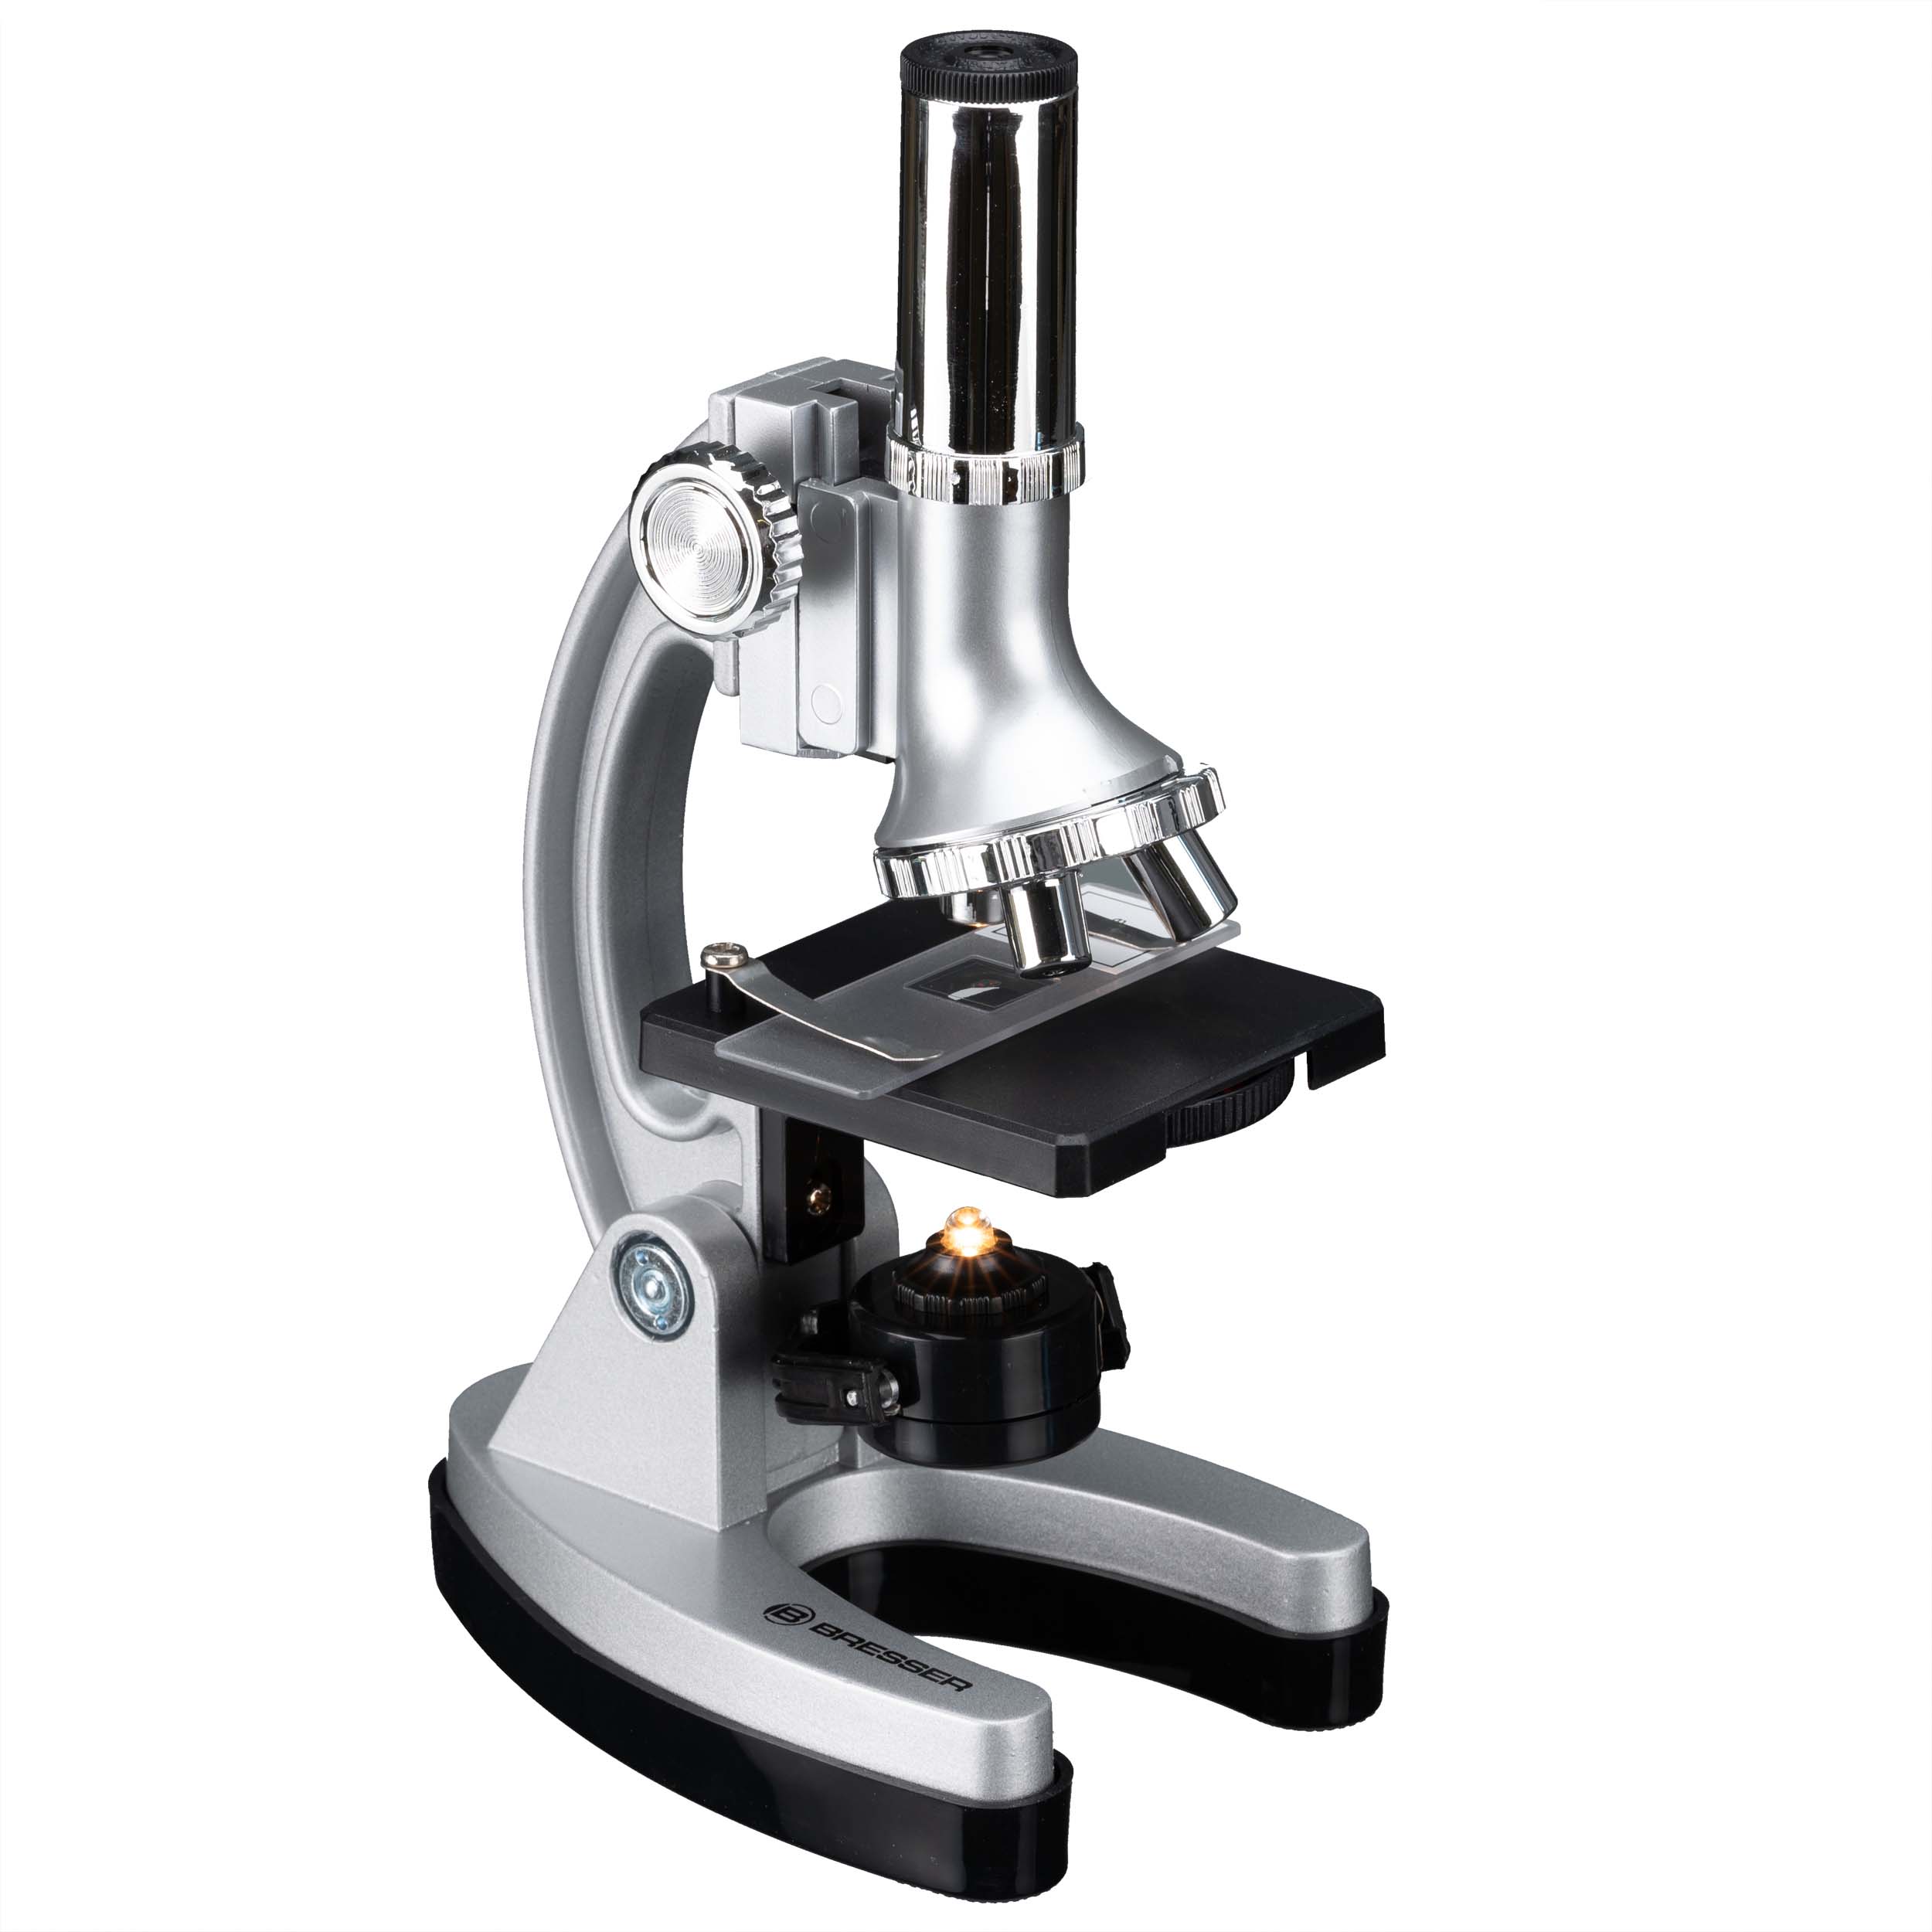 BRESSER JUNIOR Biotar 300x-1200x Set Mikroskop (ohne Koffer) (Refurbished)